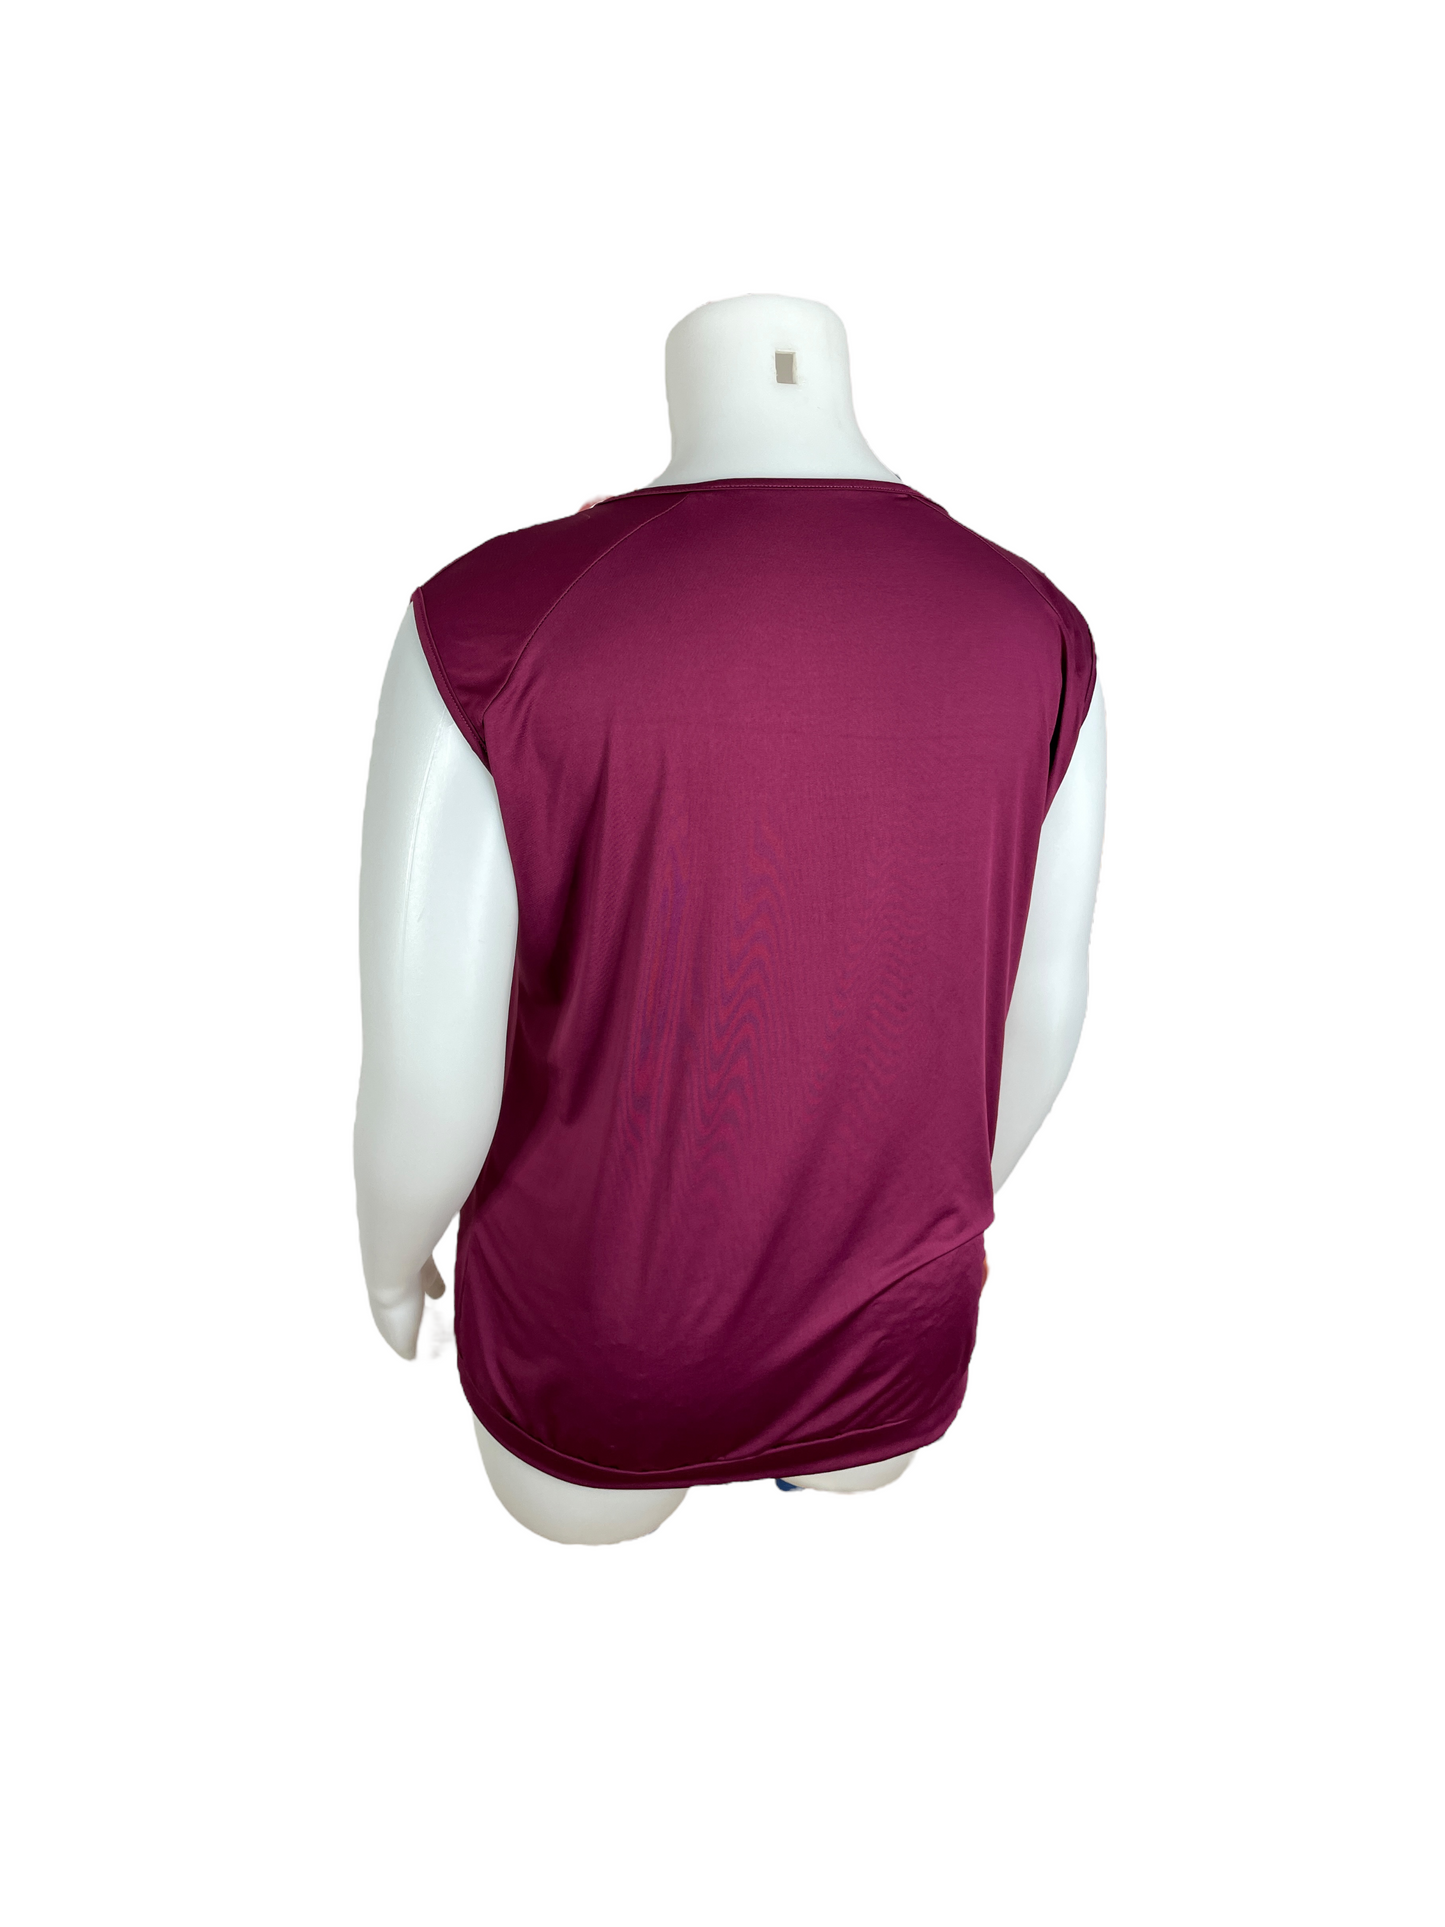 Pink Sleeveless Shirt (5XL)